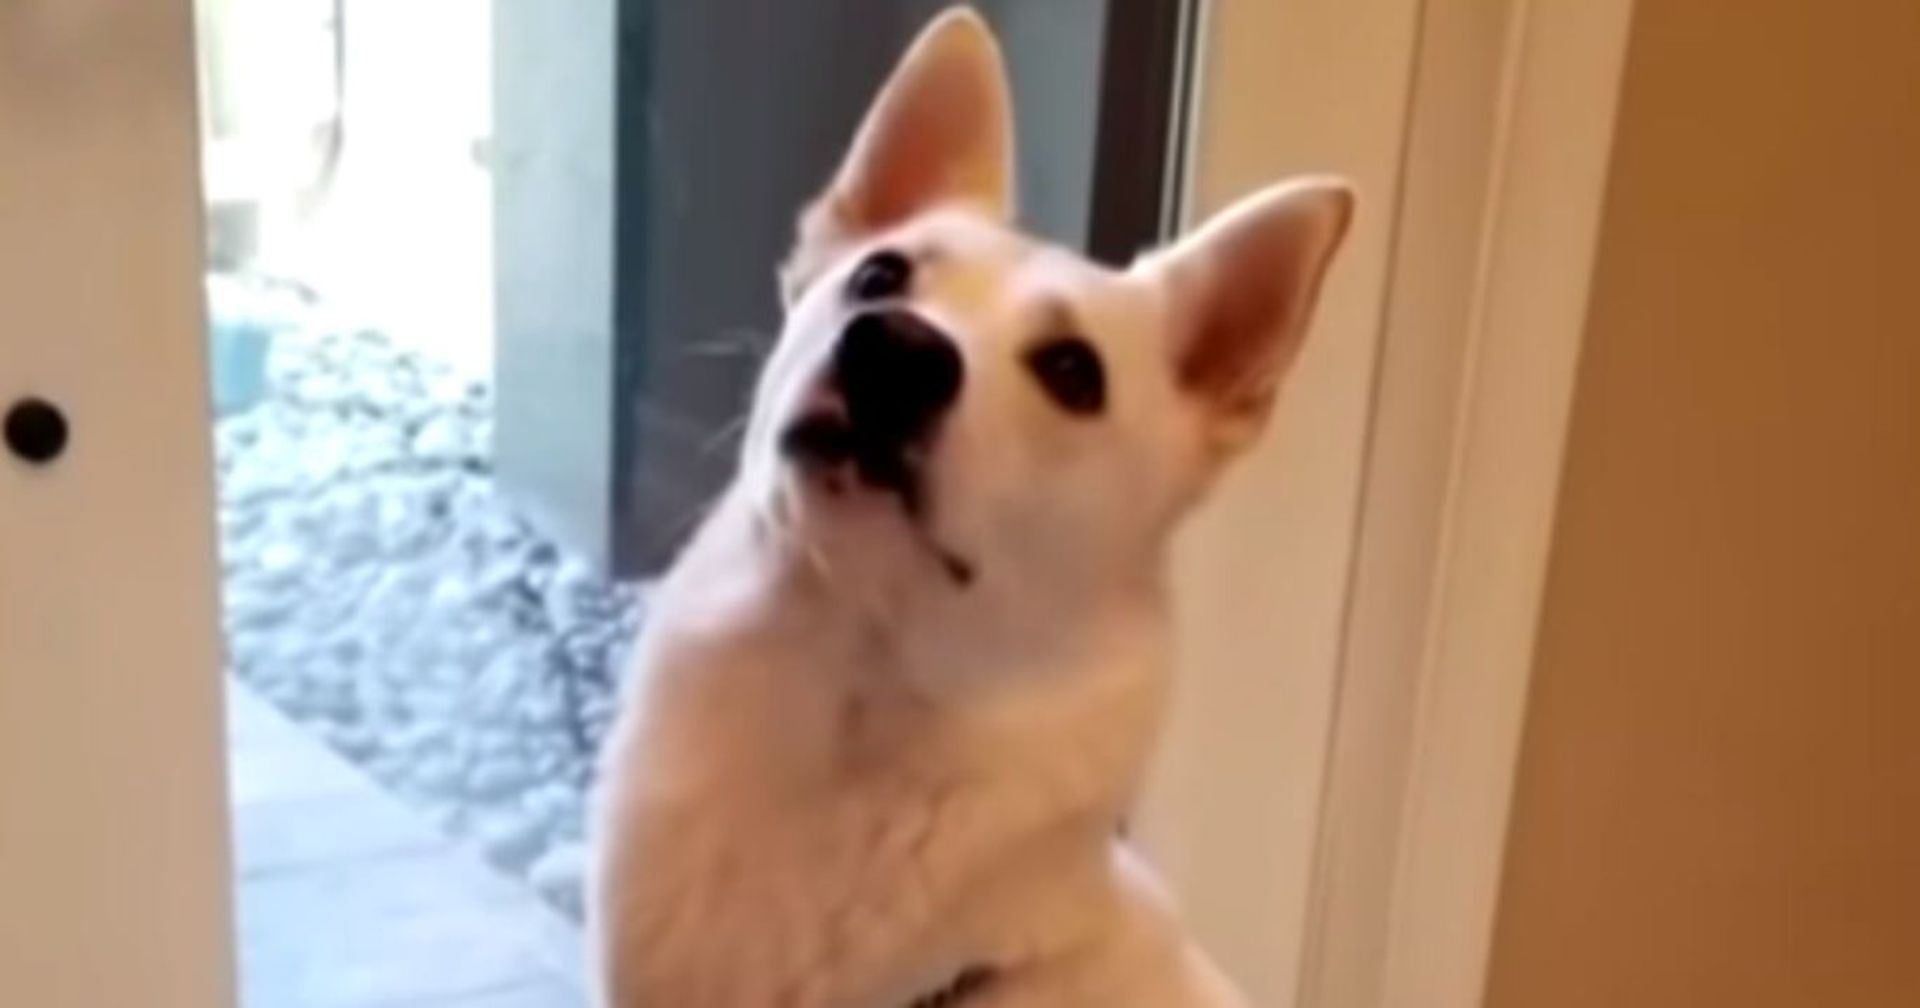 Hund bellt ohne Unterlass, bis seine Familie eine schockierende Entdeckung hinter der Tür macht